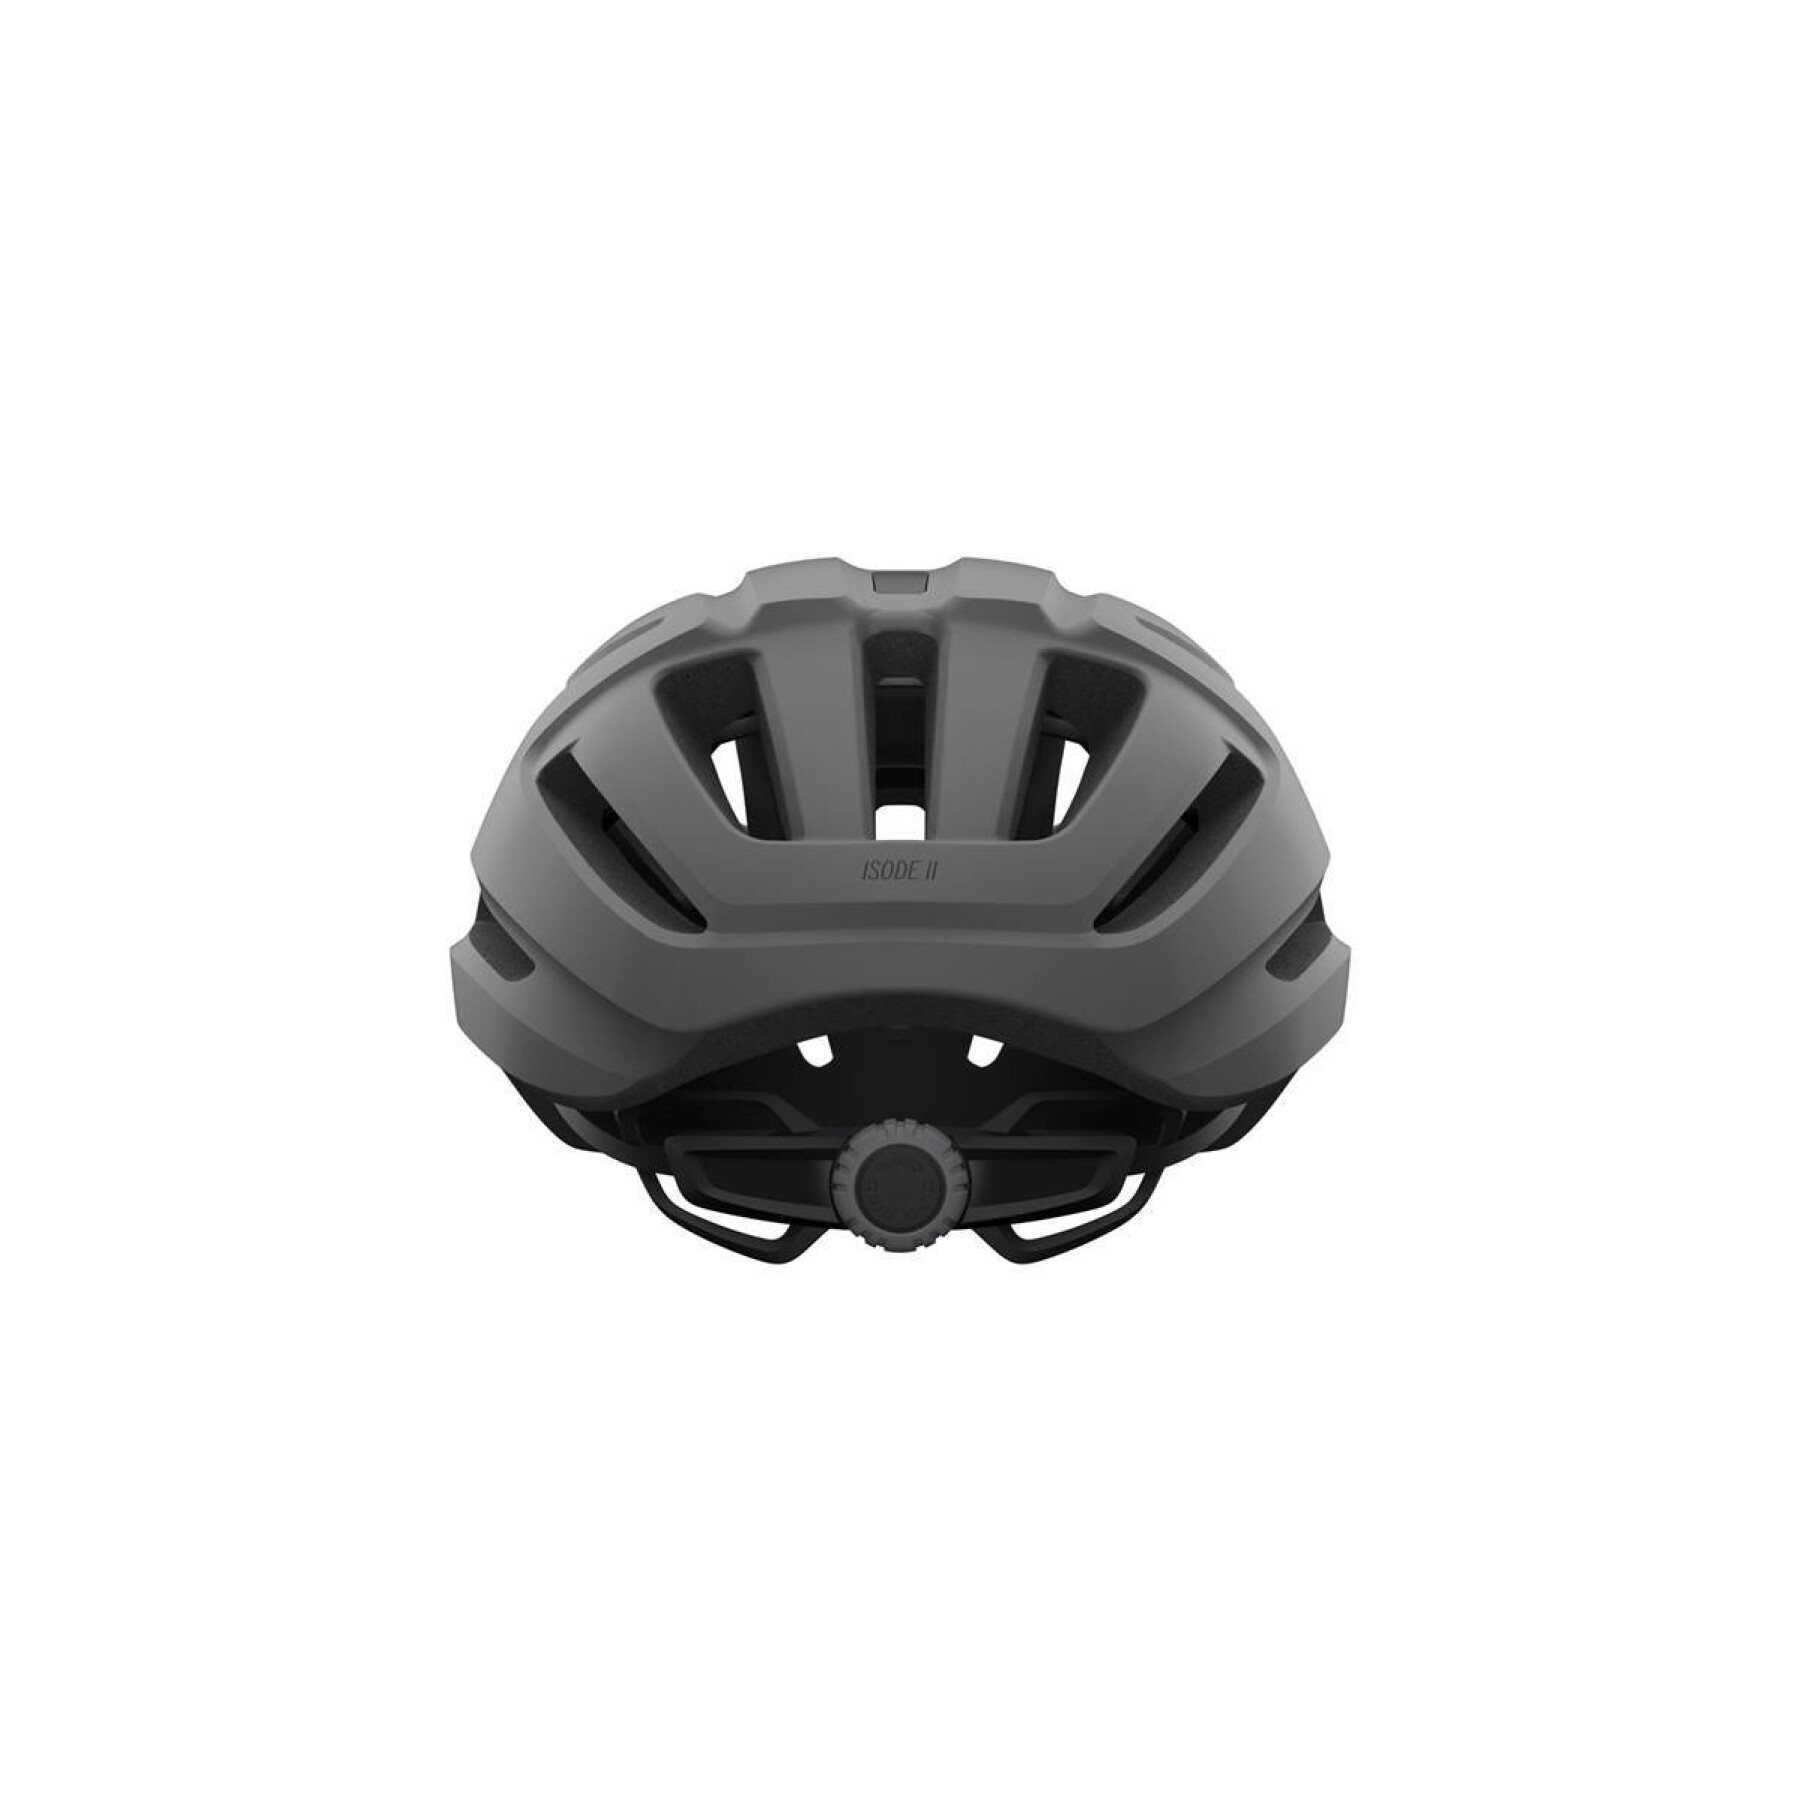 Road helmet Giro Isode II